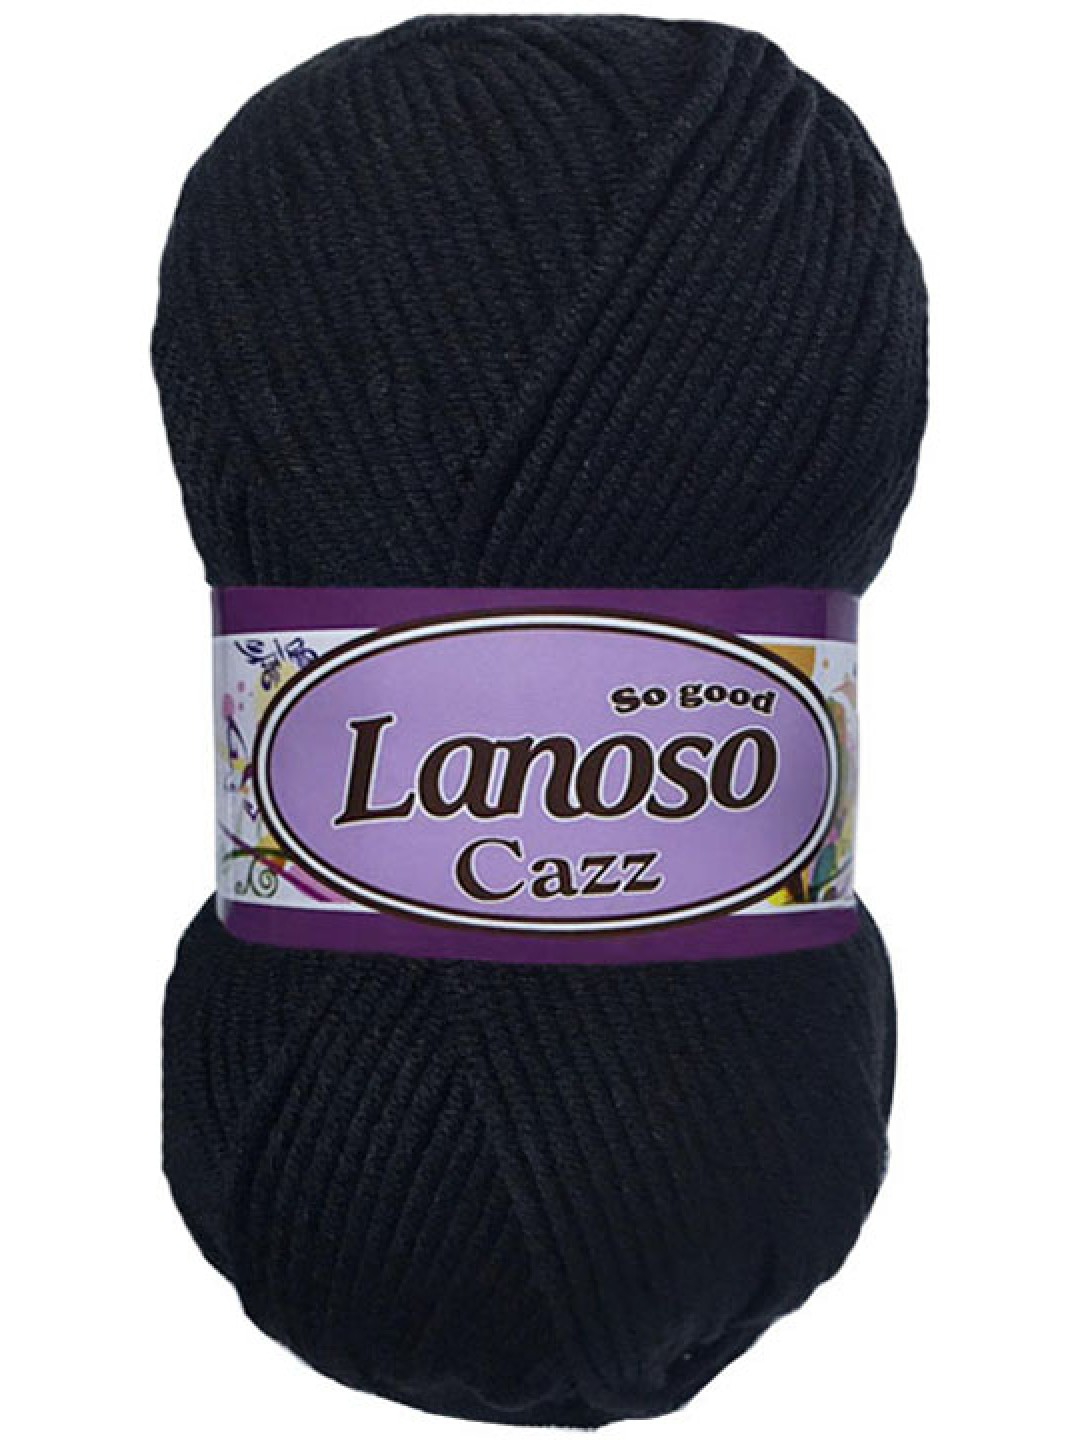 Lanoso Cazz 960